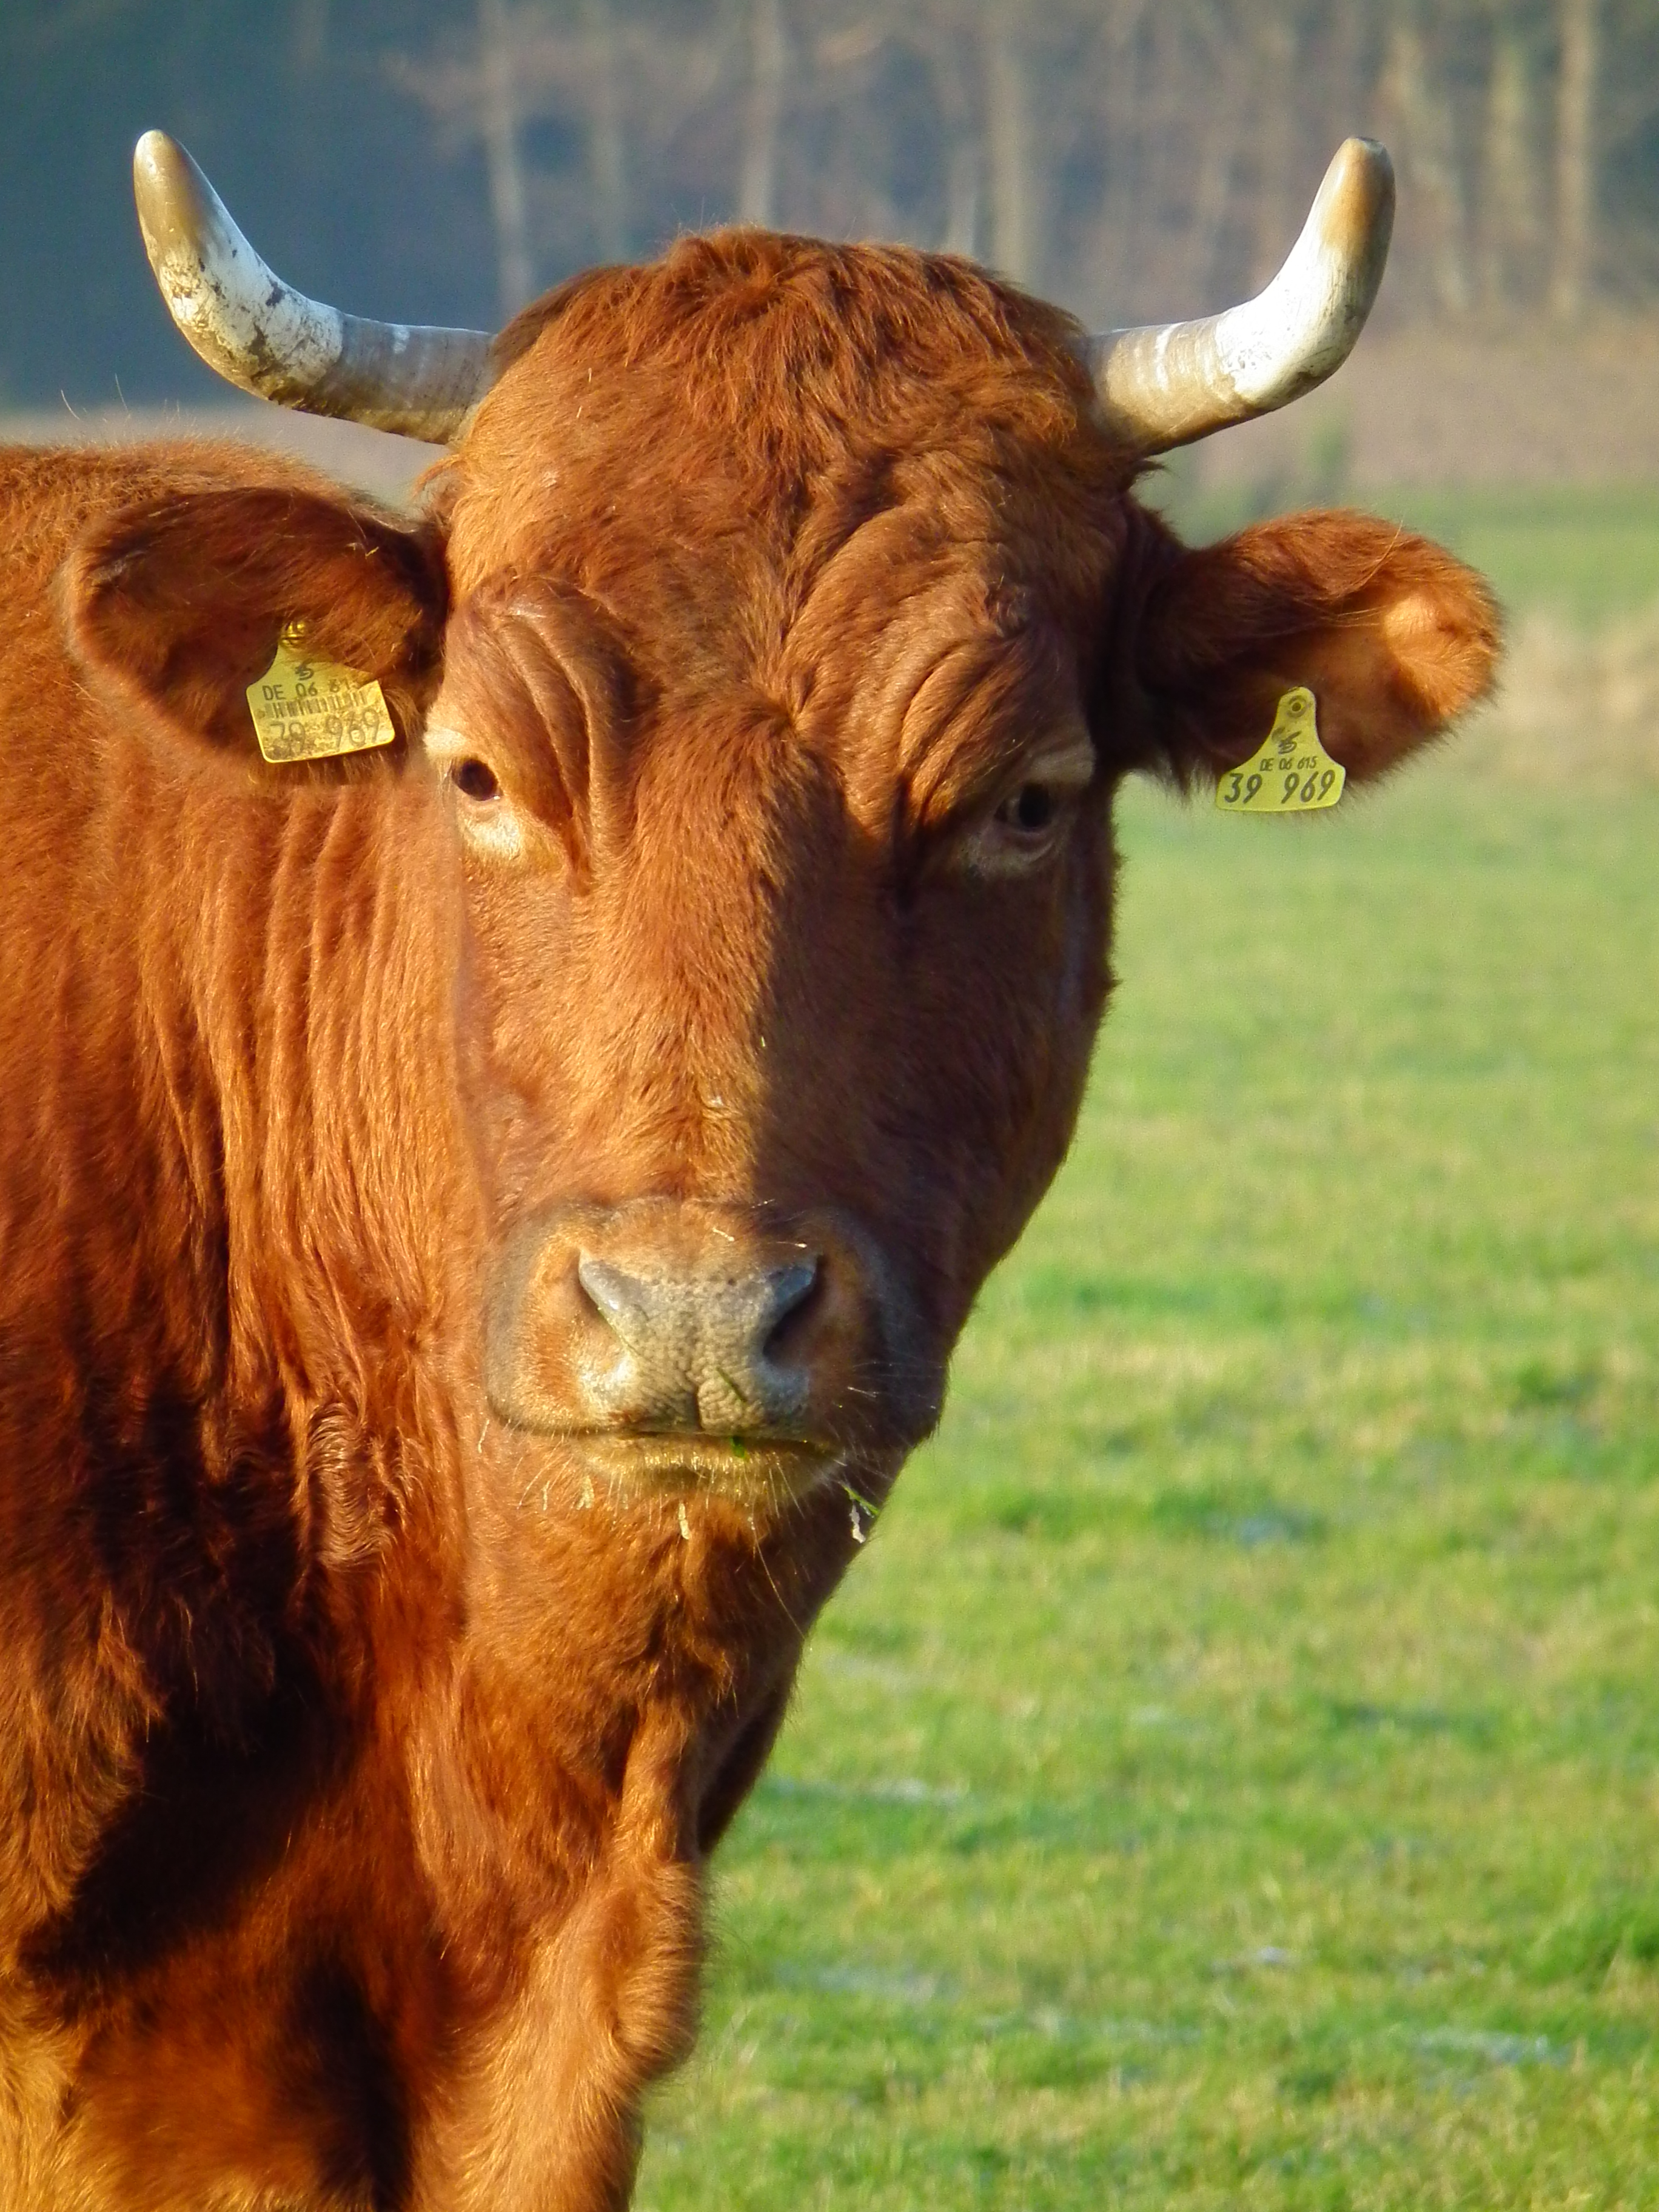 File:Kopf brauner Kuh mit Hörnern und Ohrmarken.JPG - Wikimedia